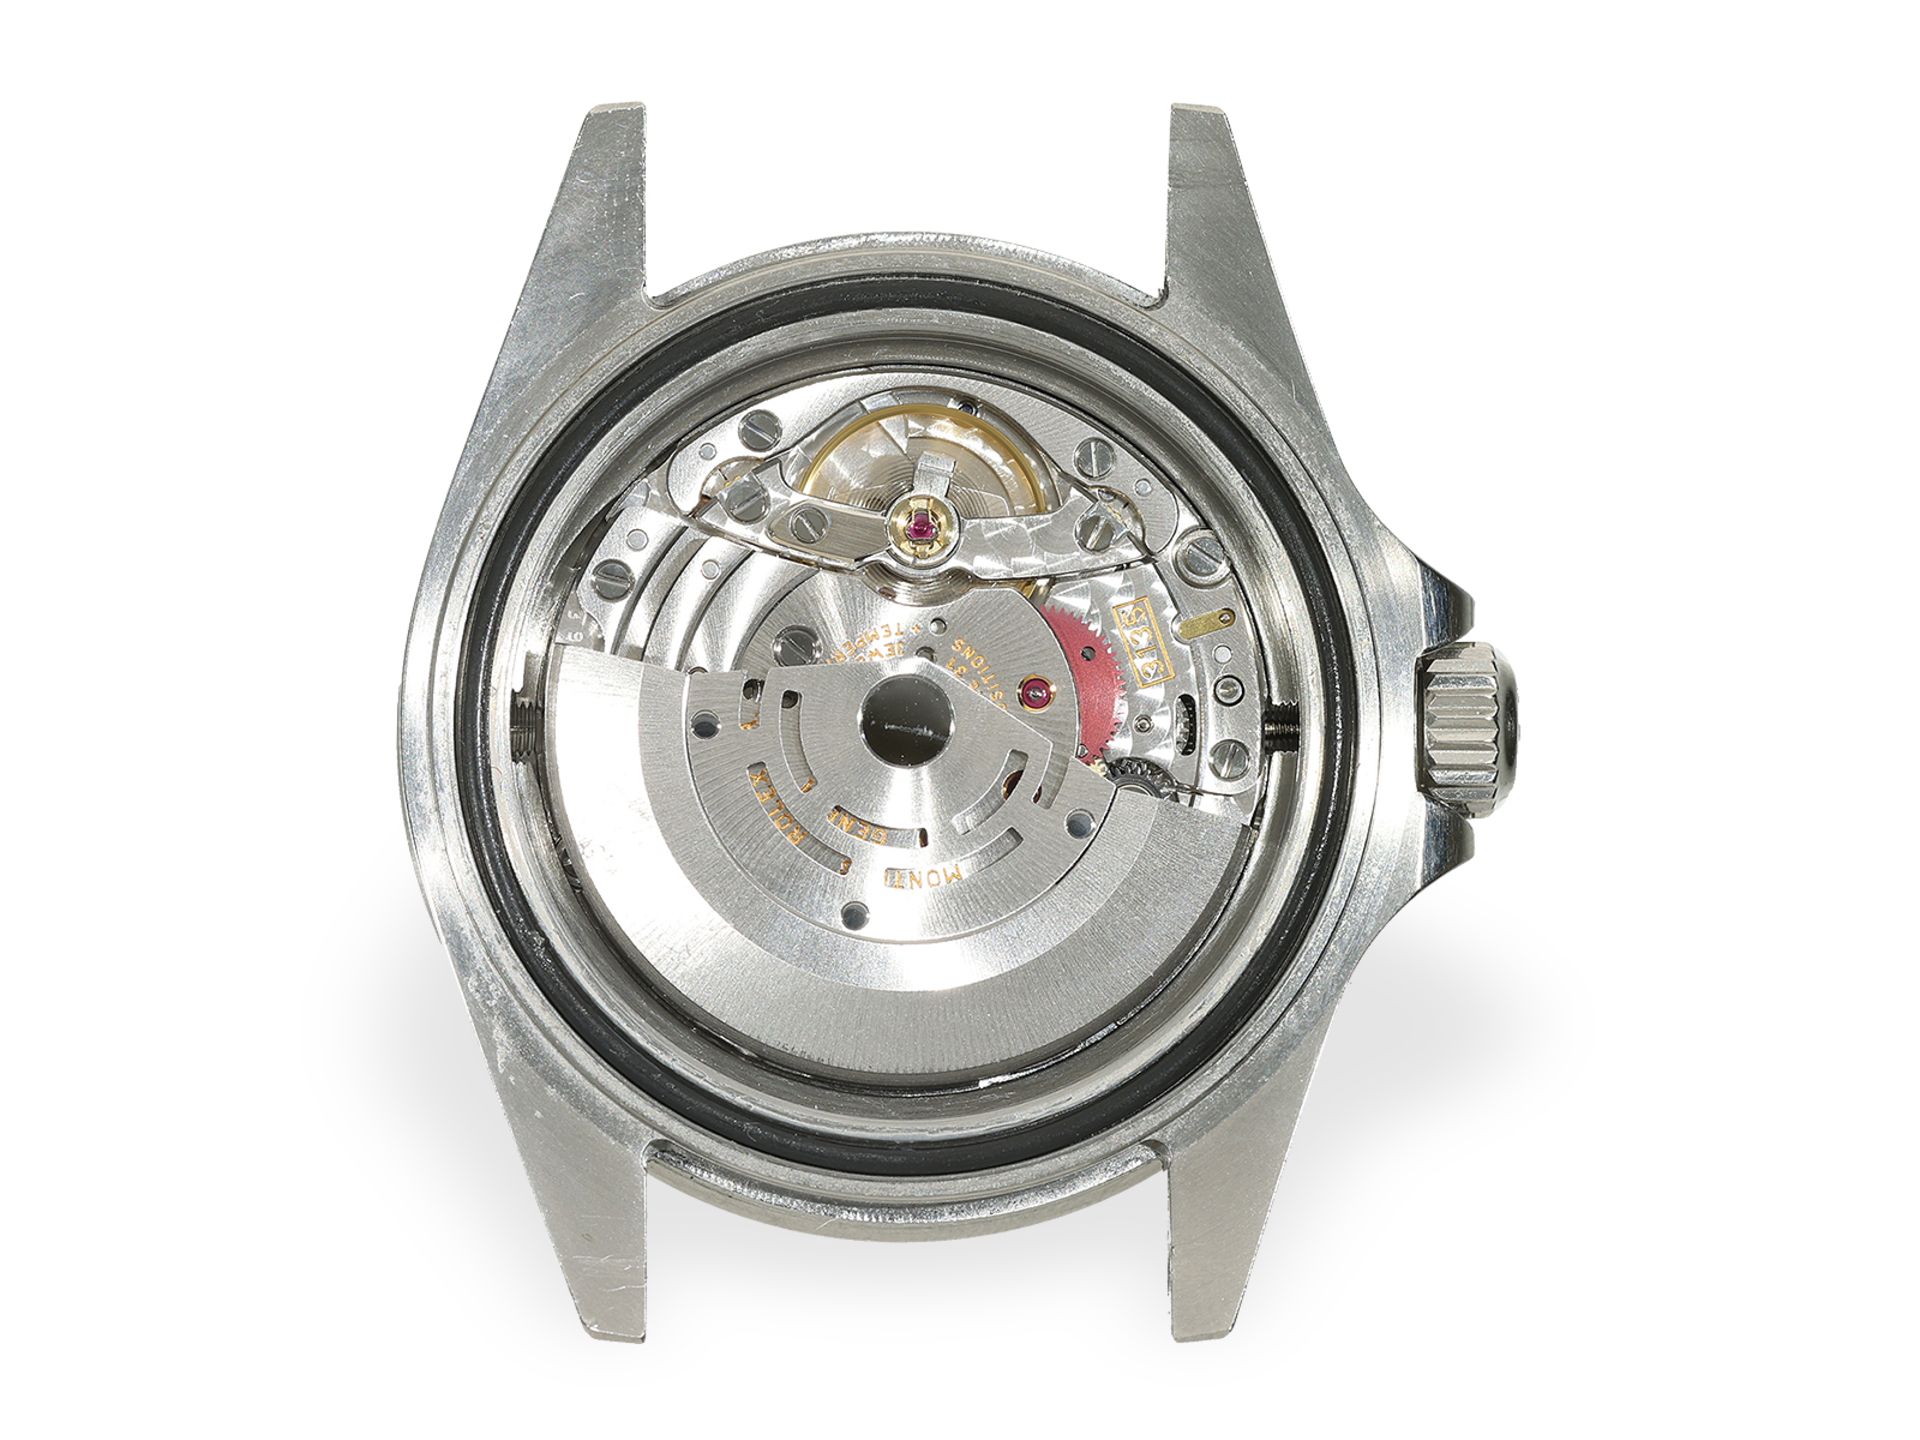 Armbanduhr: Rolex Sea-Dweller REF. 16600, Stahl, Box & Papiere, 2002/2003 - Bild 5 aus 10